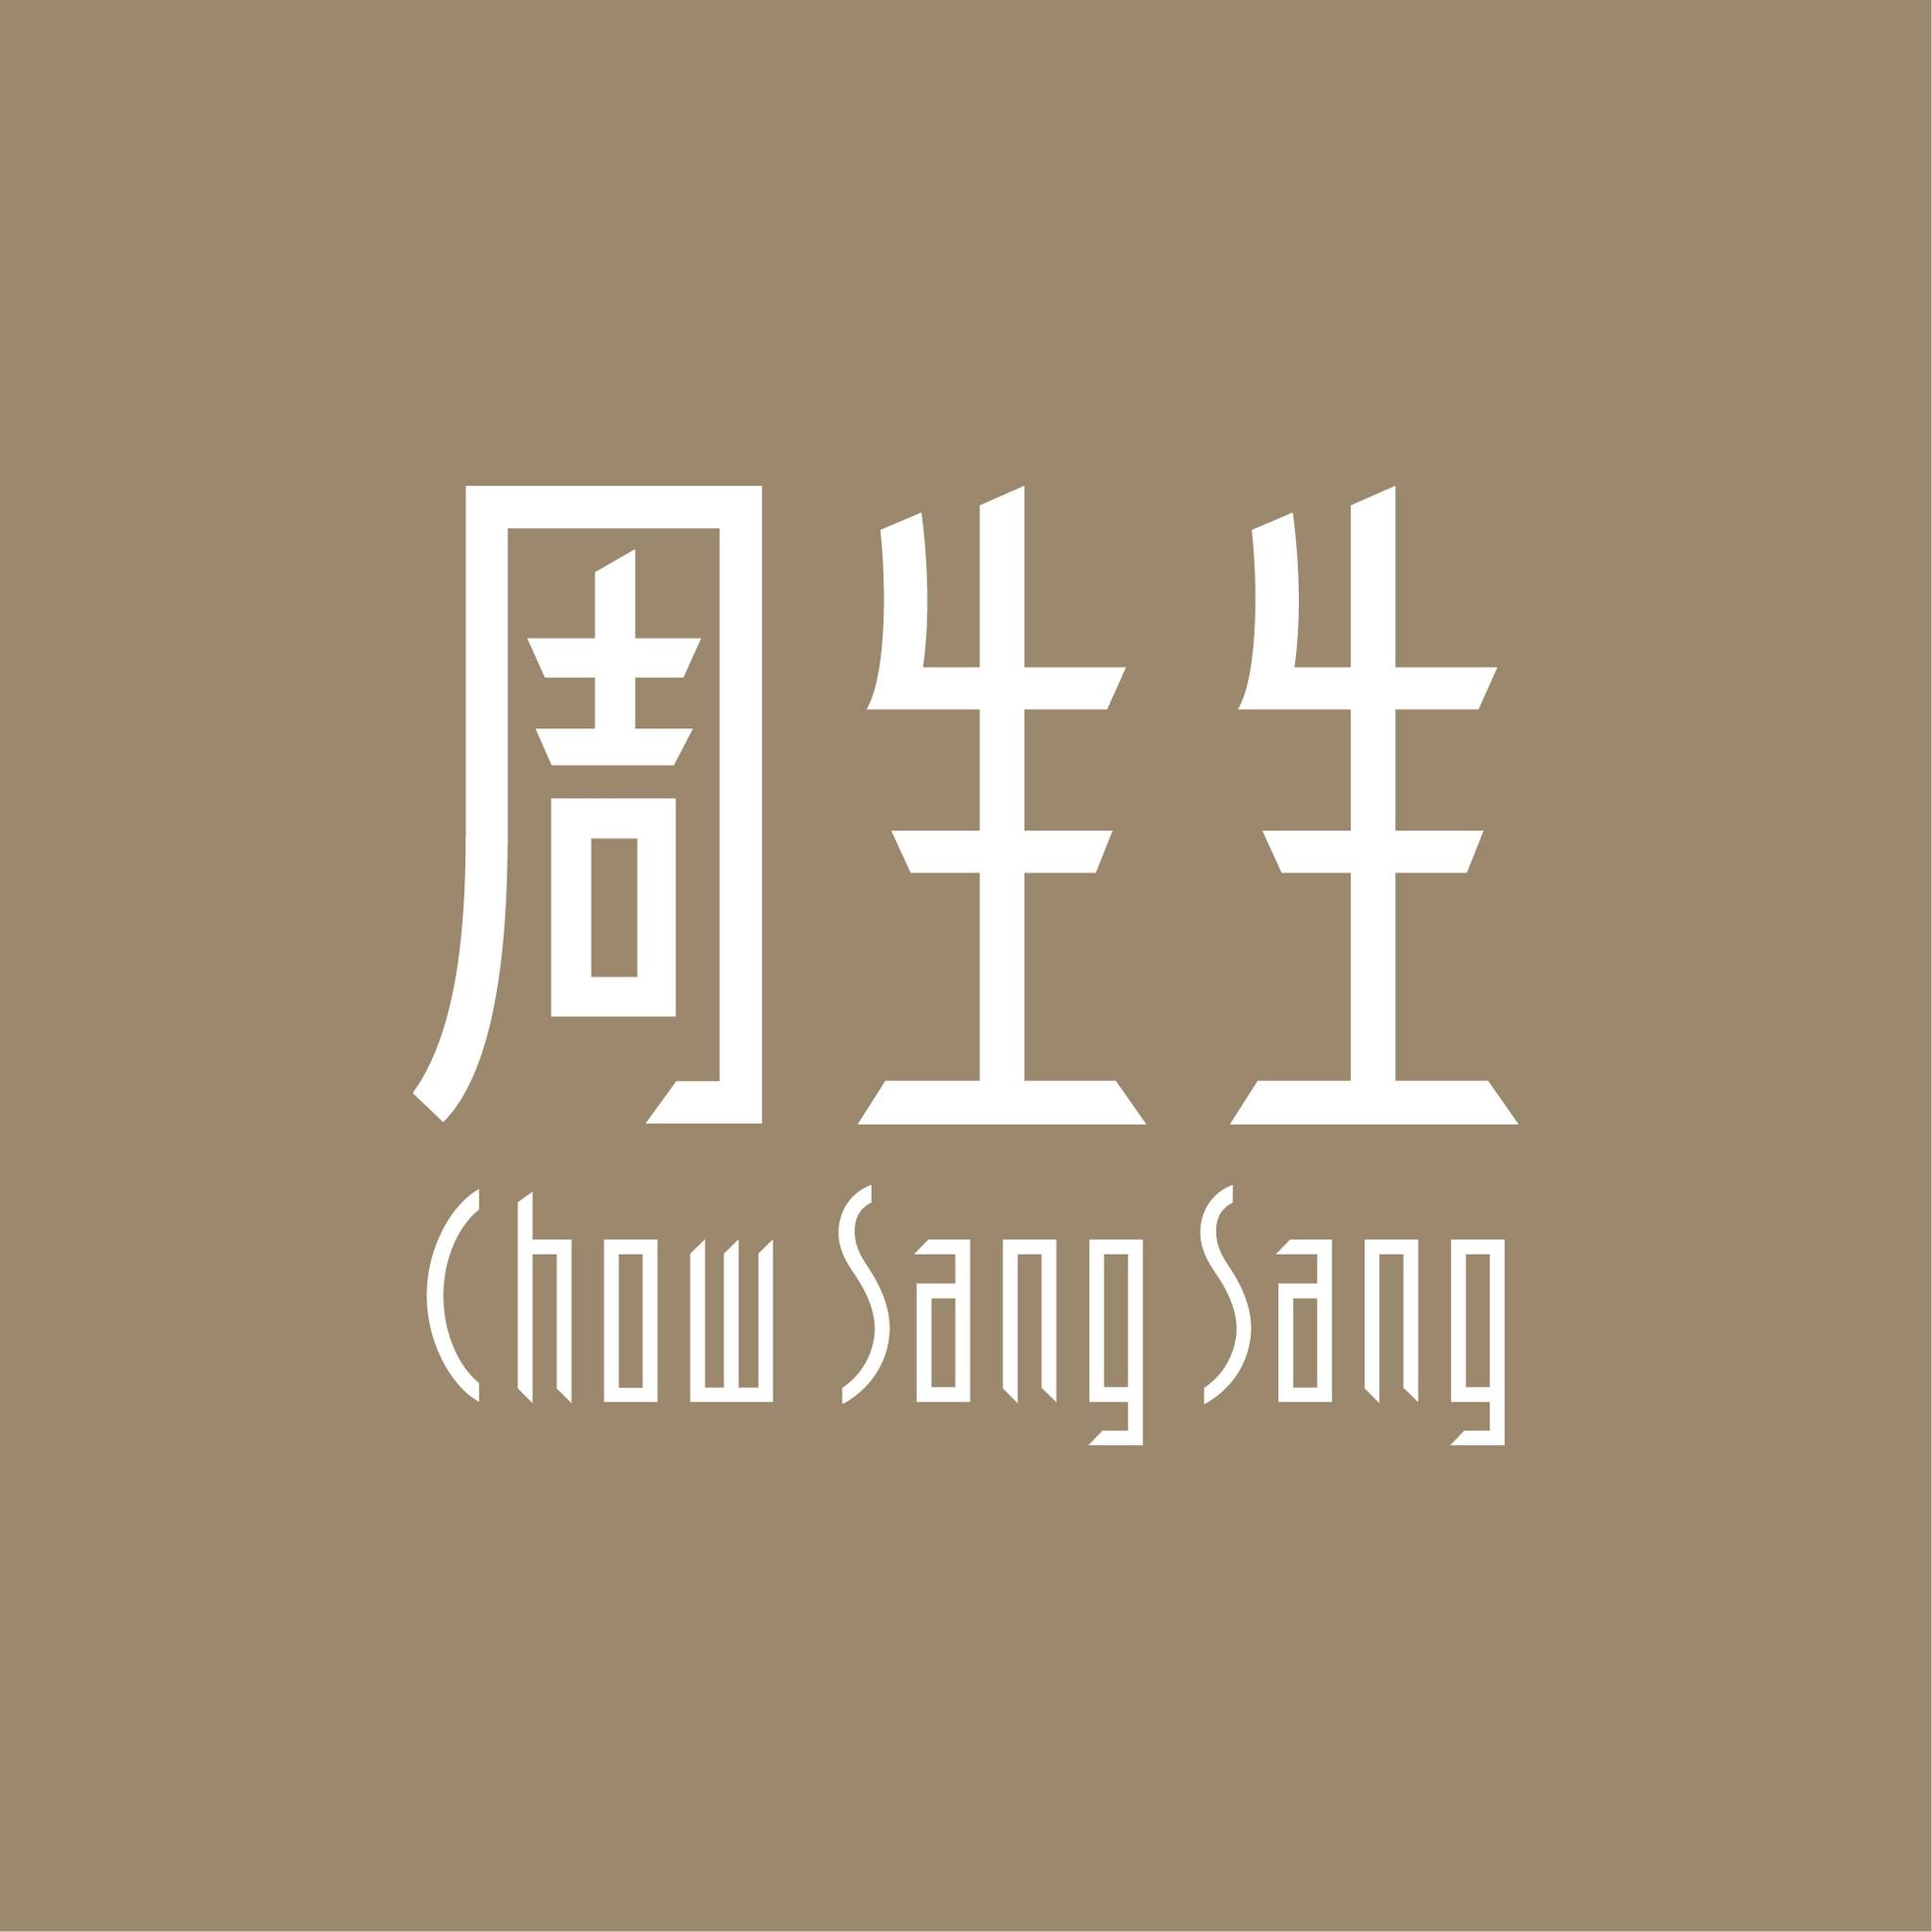 Chow Sang Sang Jewellery